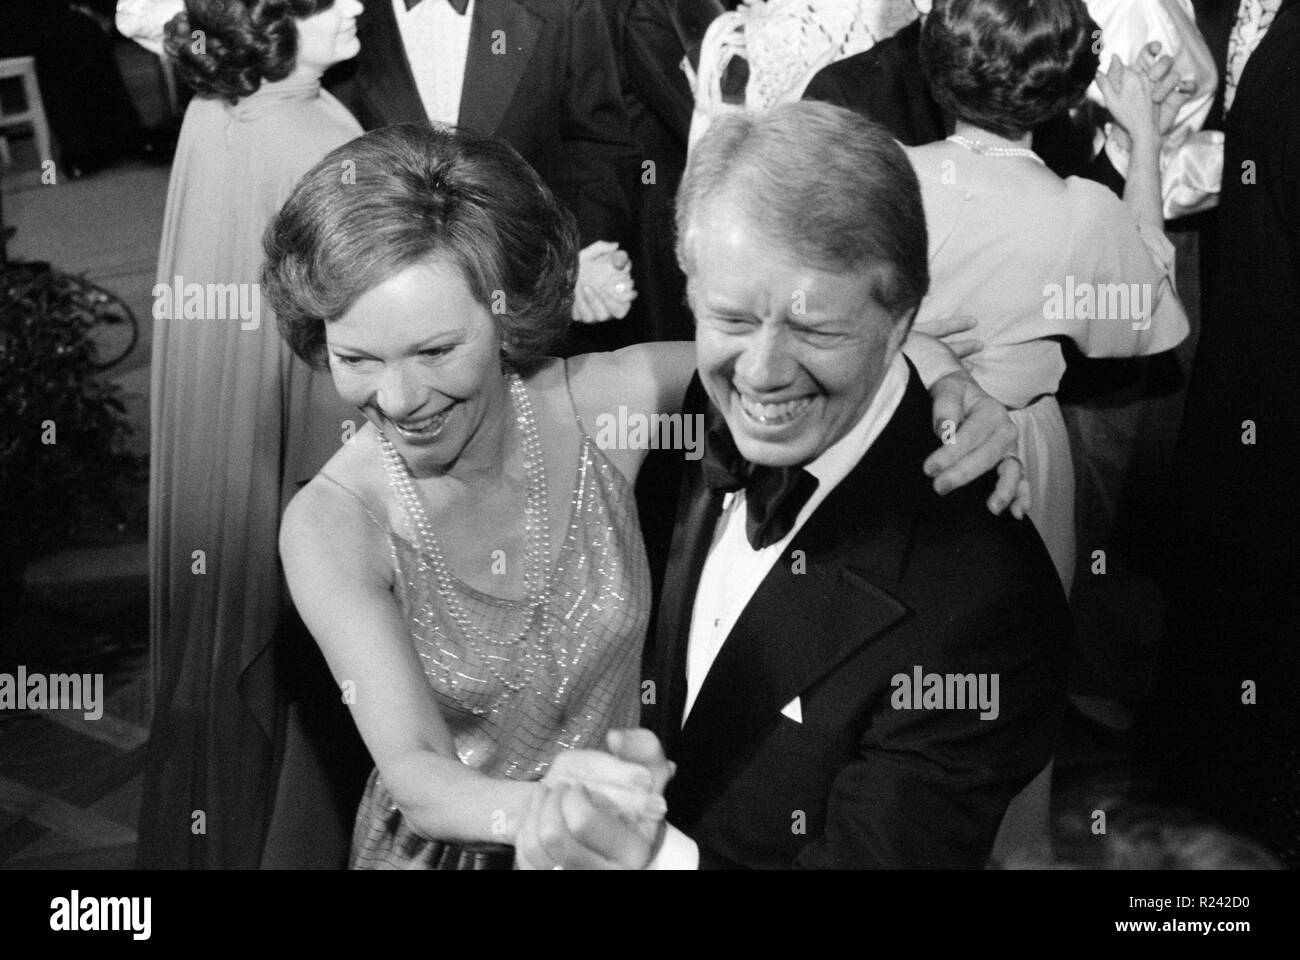 Foto von Präsident Jimmy Carter und First Lady Rosalynn Carter auf dem White House Congressional Ball tanzen. Fotografiert von Marion S. Trikosko. Datierte 1977 Stockfoto